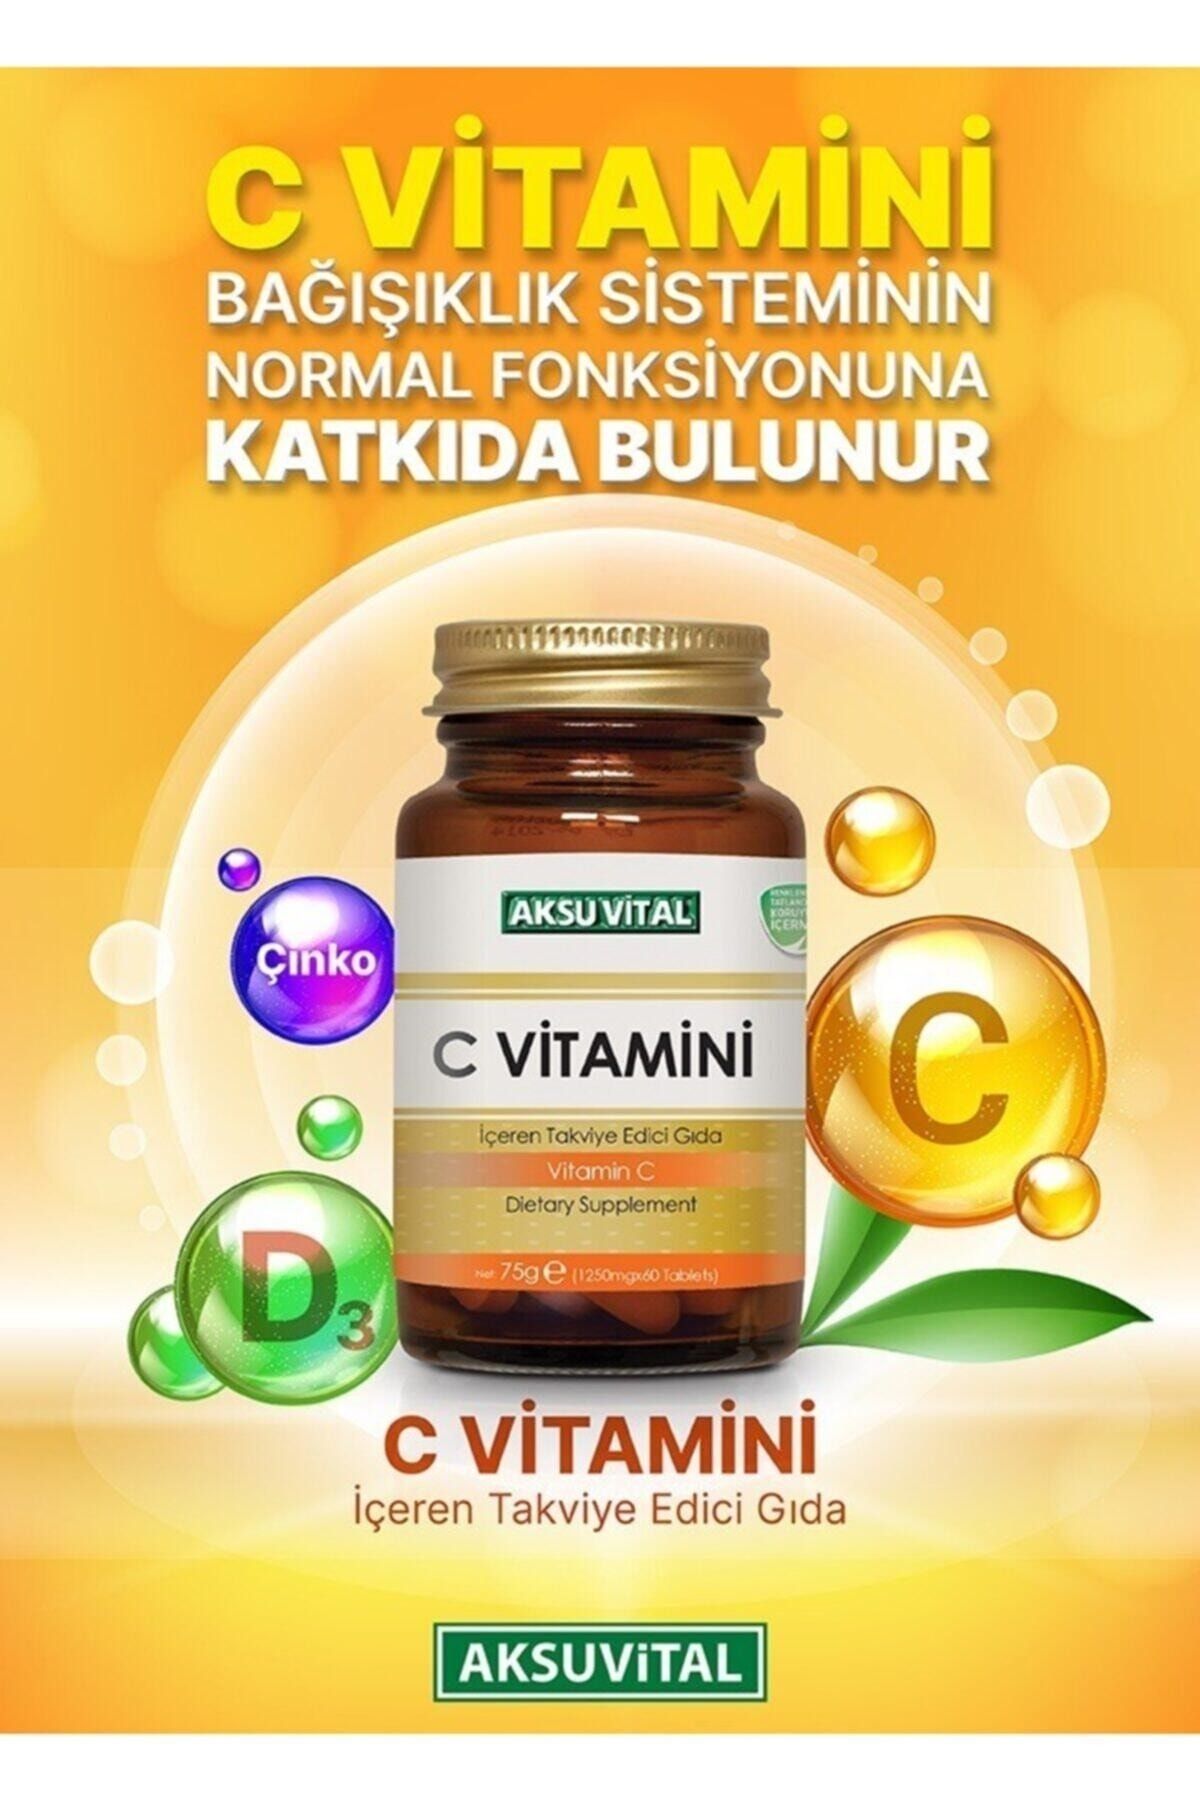 Aksu Vital C Vitamini 1250 Mg 60 Tablet